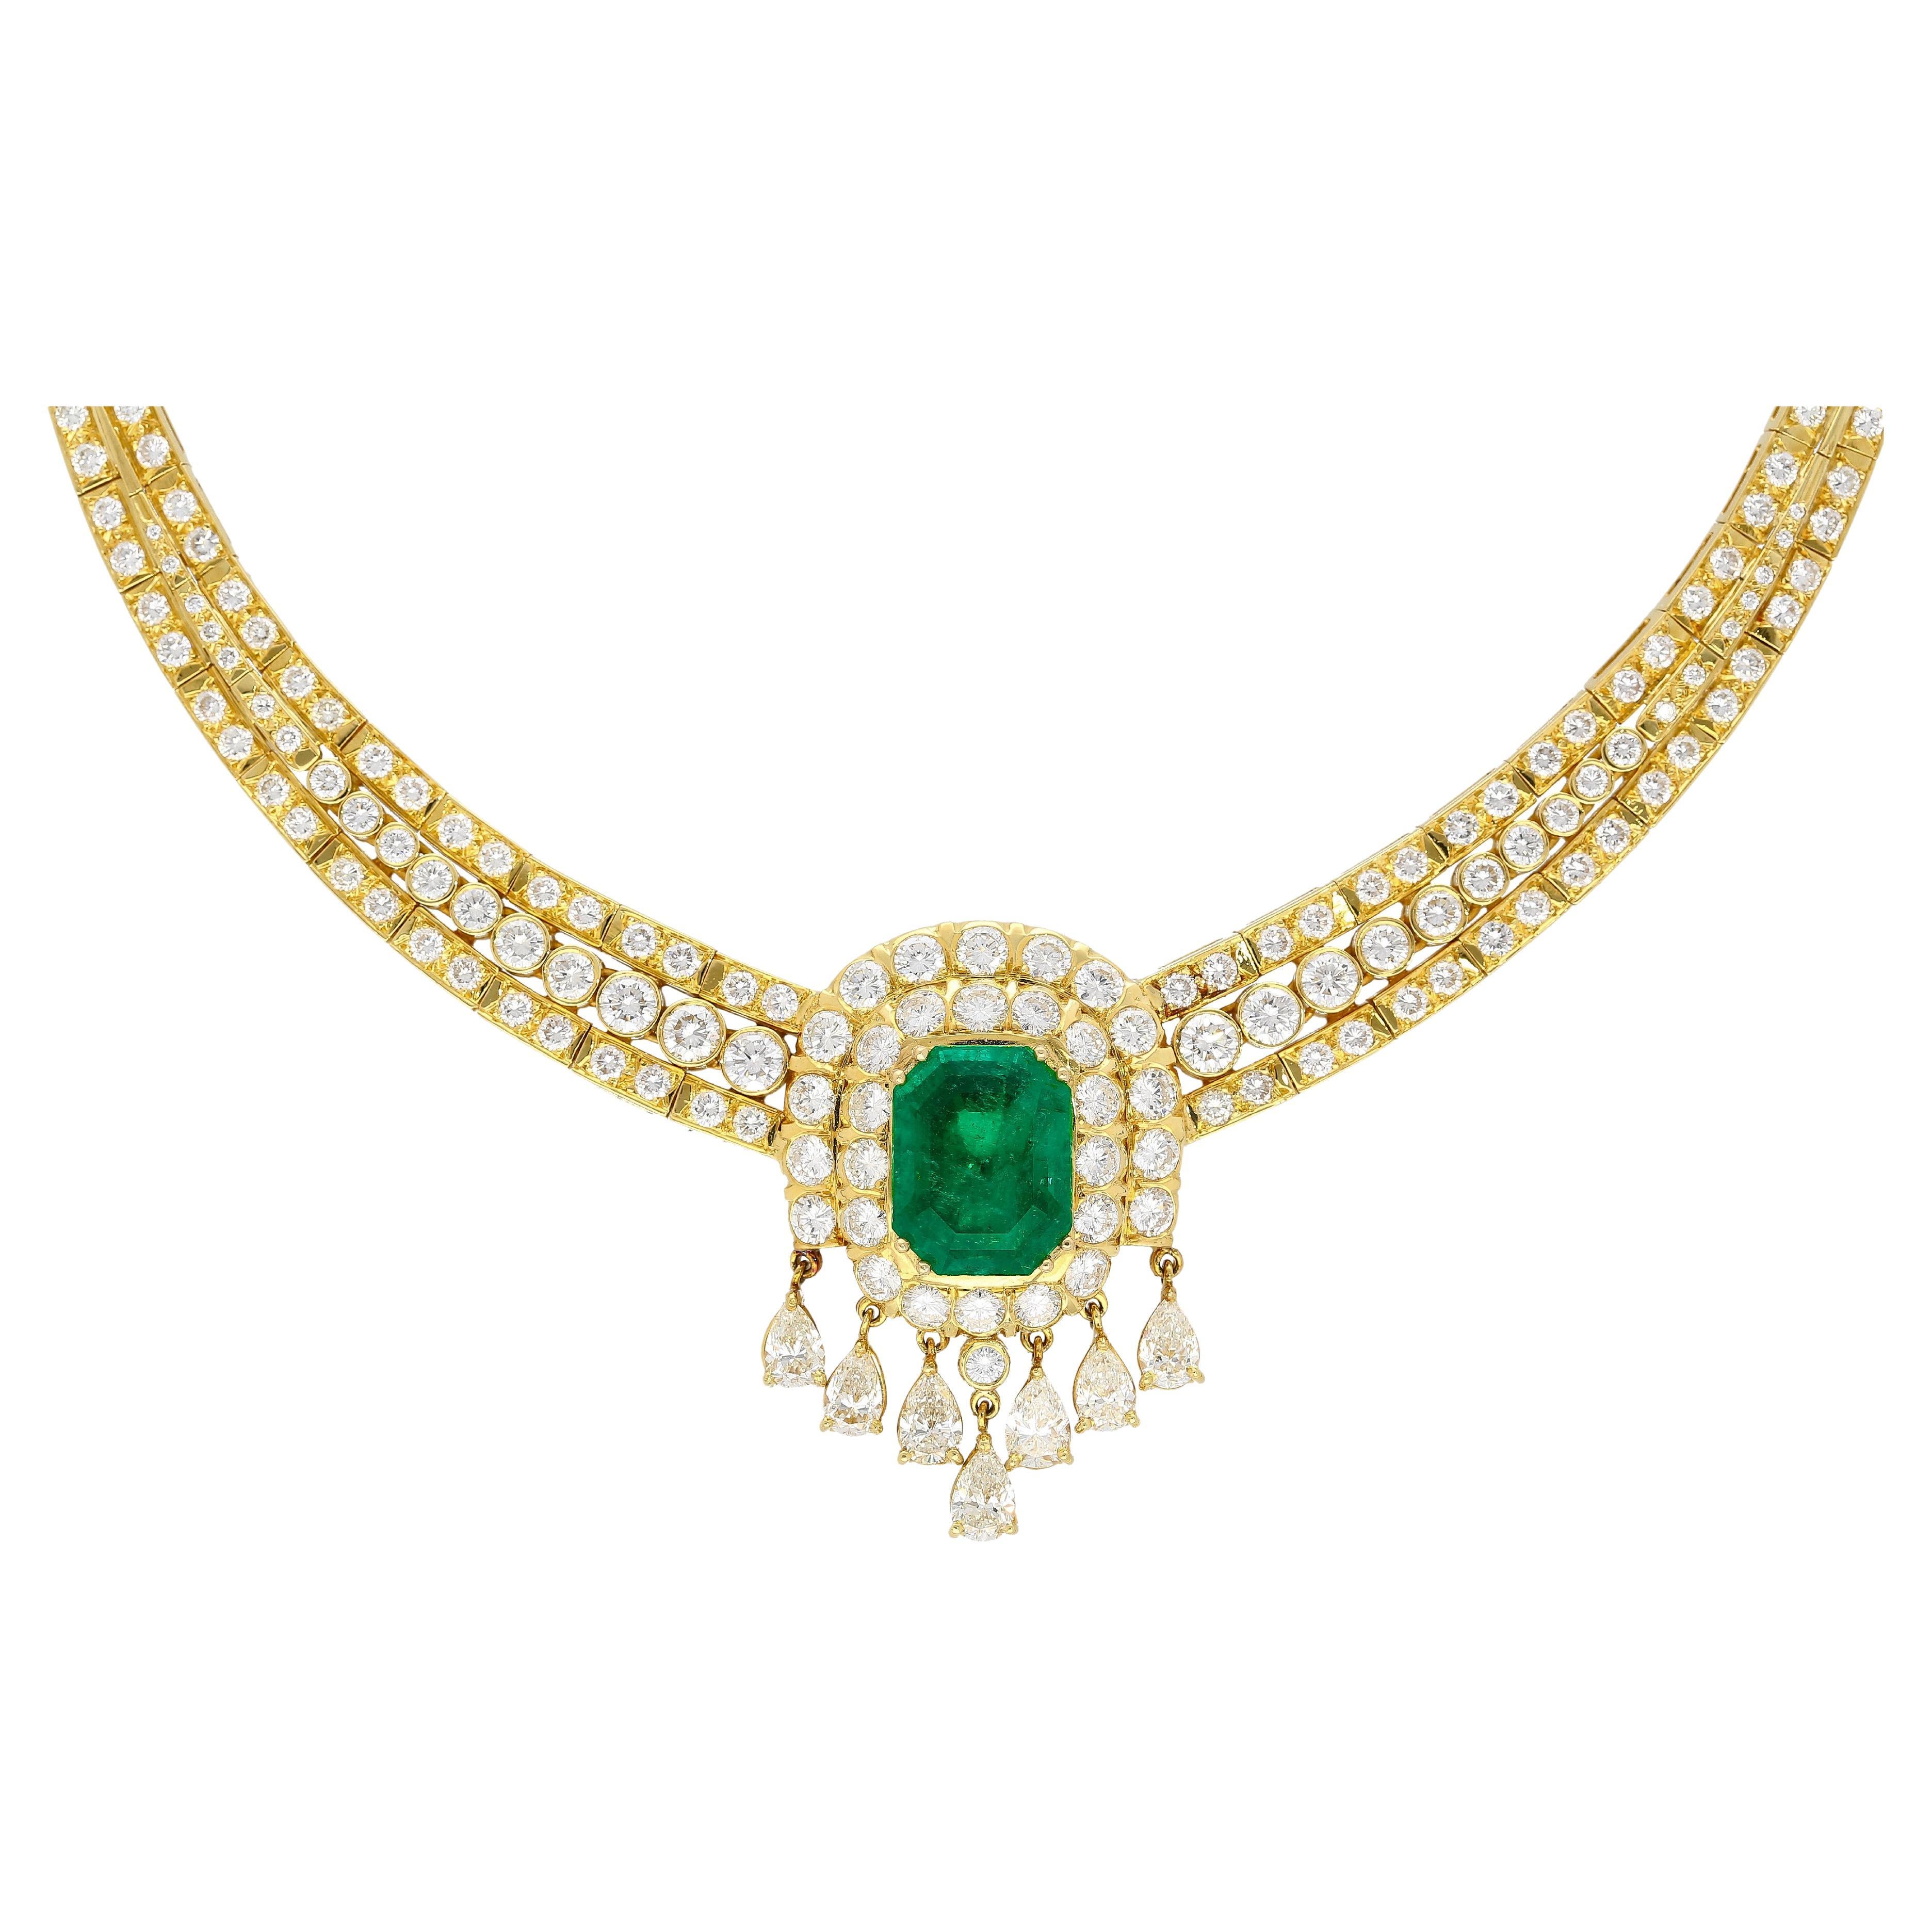 27 Carat Colombian Emerald & Diamond Chandelier Regal Choker Necklace in 18k For Sale